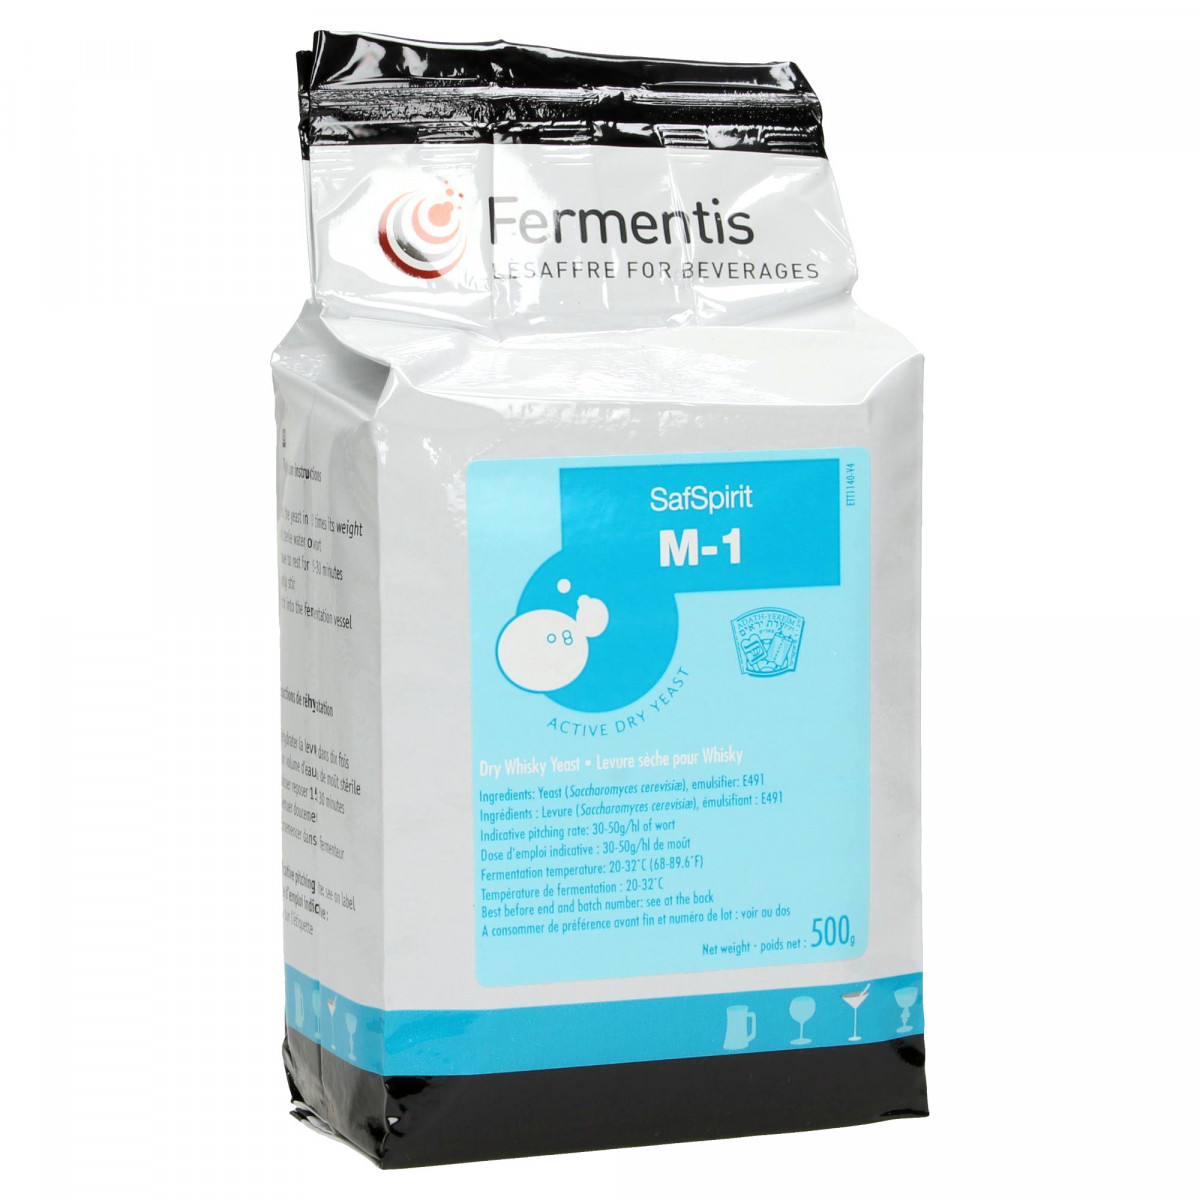 Fermentis Safspirit M-1 Malt Yeast 500 g